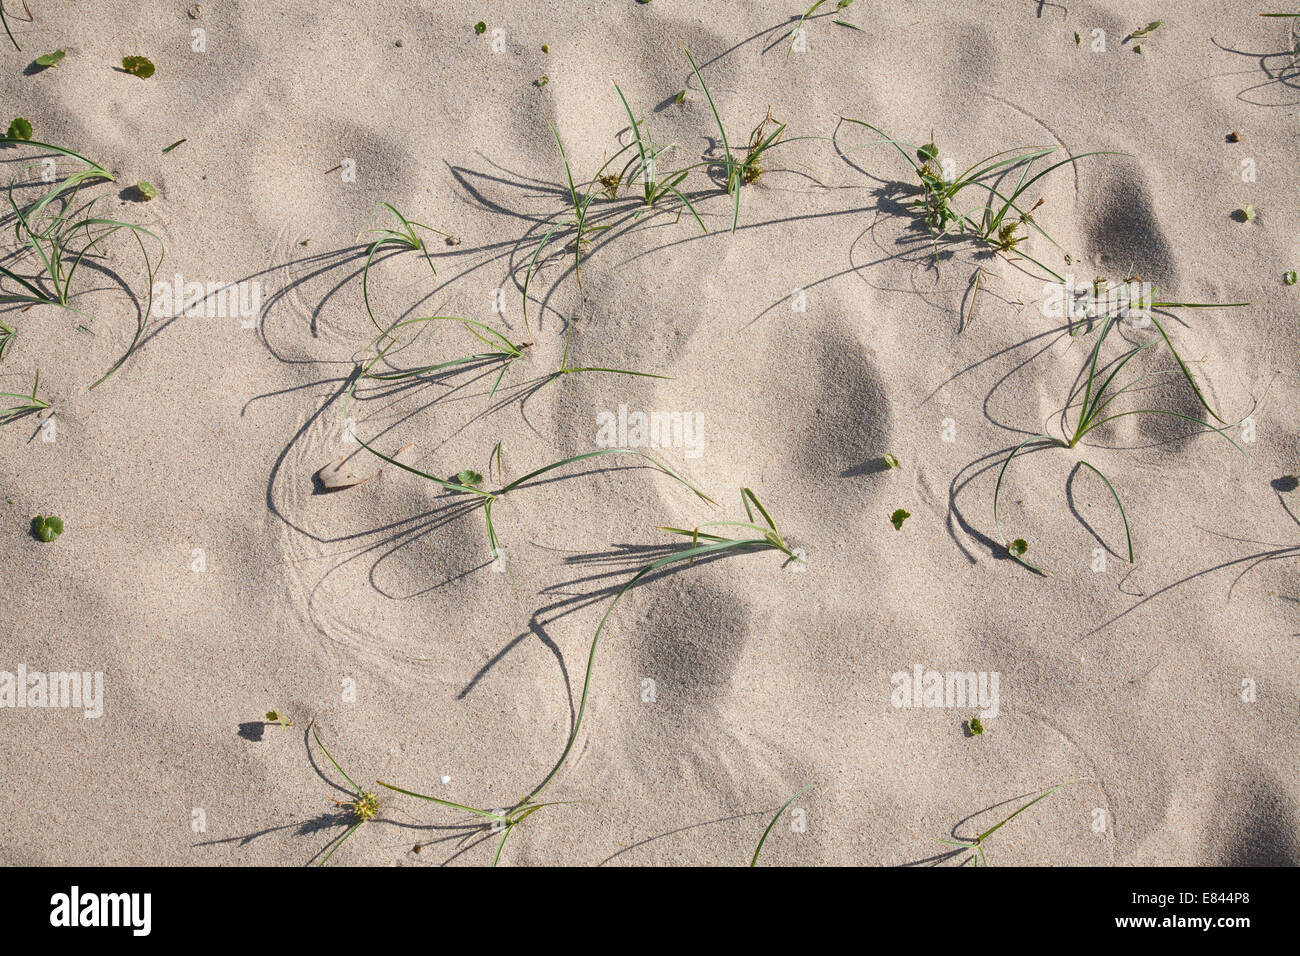 Die Muster der Natur wie der Wind bewegt Blätter im Sand am steinigen Strand Murramarang National Park South Coast NSW Aus Stockfoto